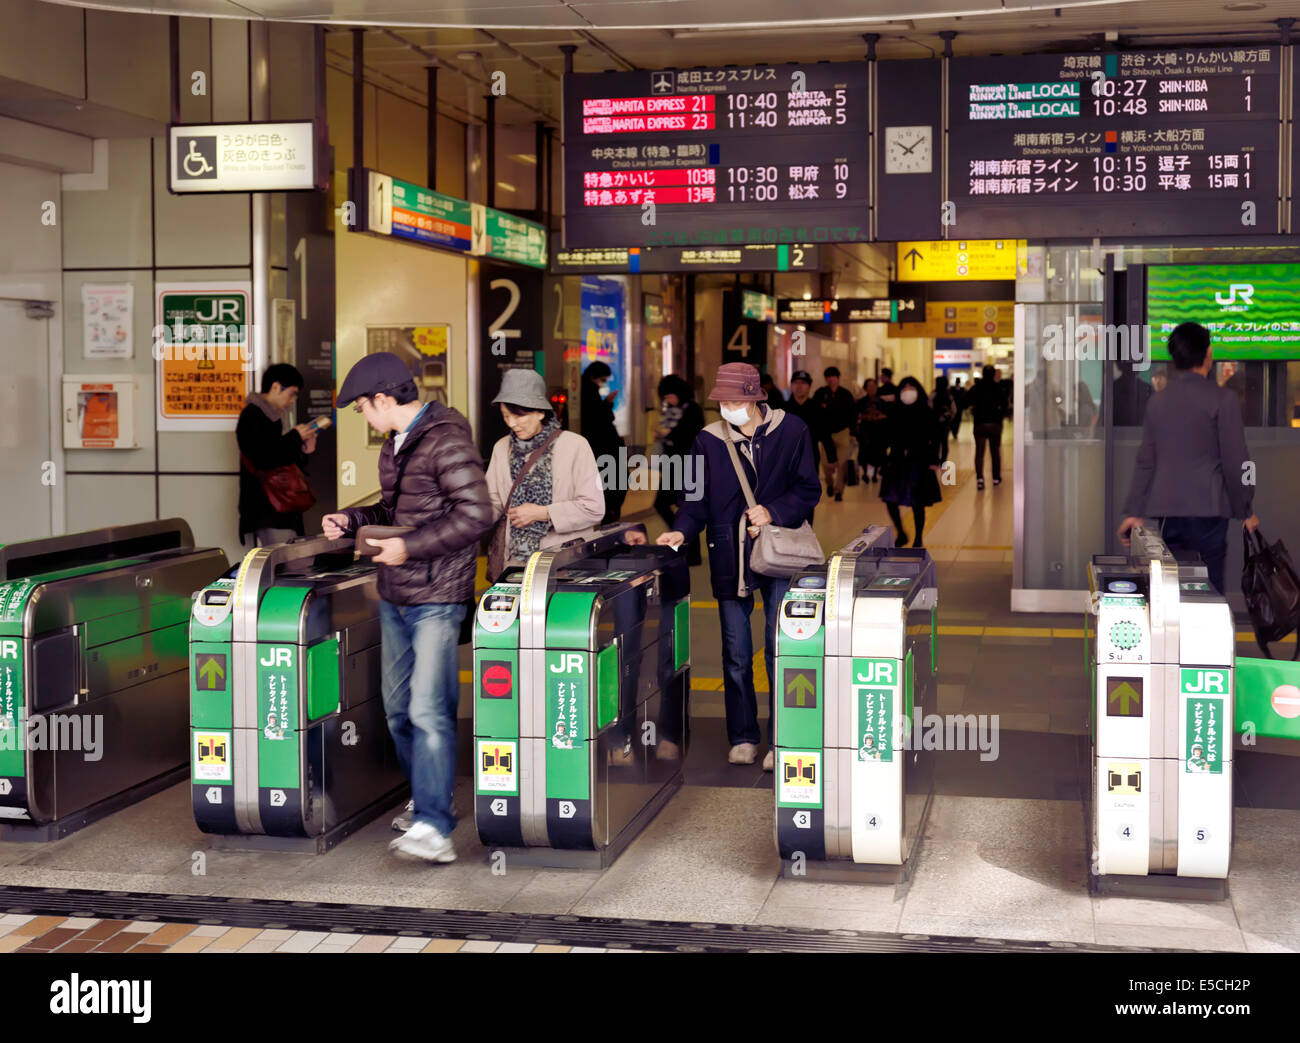 People passing through JR train station turnstiles. Tokyo, Japan Stock Photo